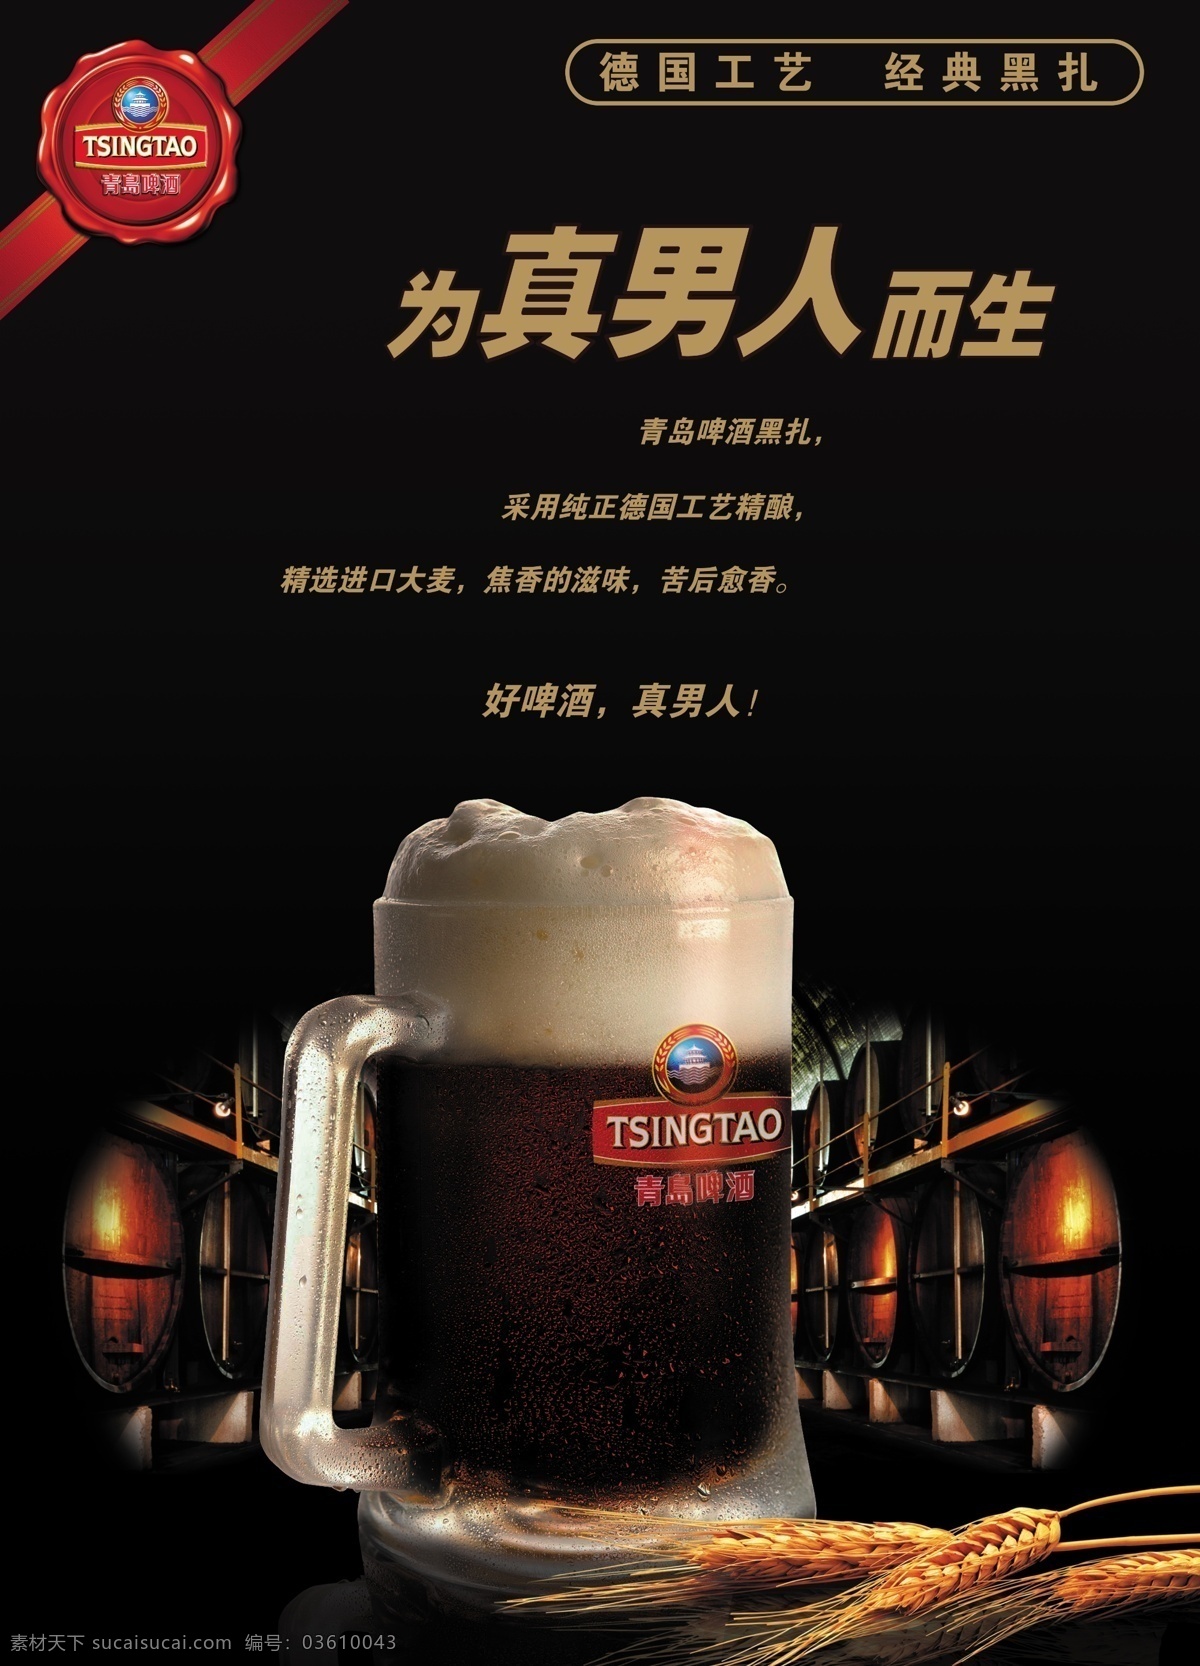 黑啤 黑啤素材下载 黑啤模板下载 啤酒 青岛啤酒 广告设计模板 源文件